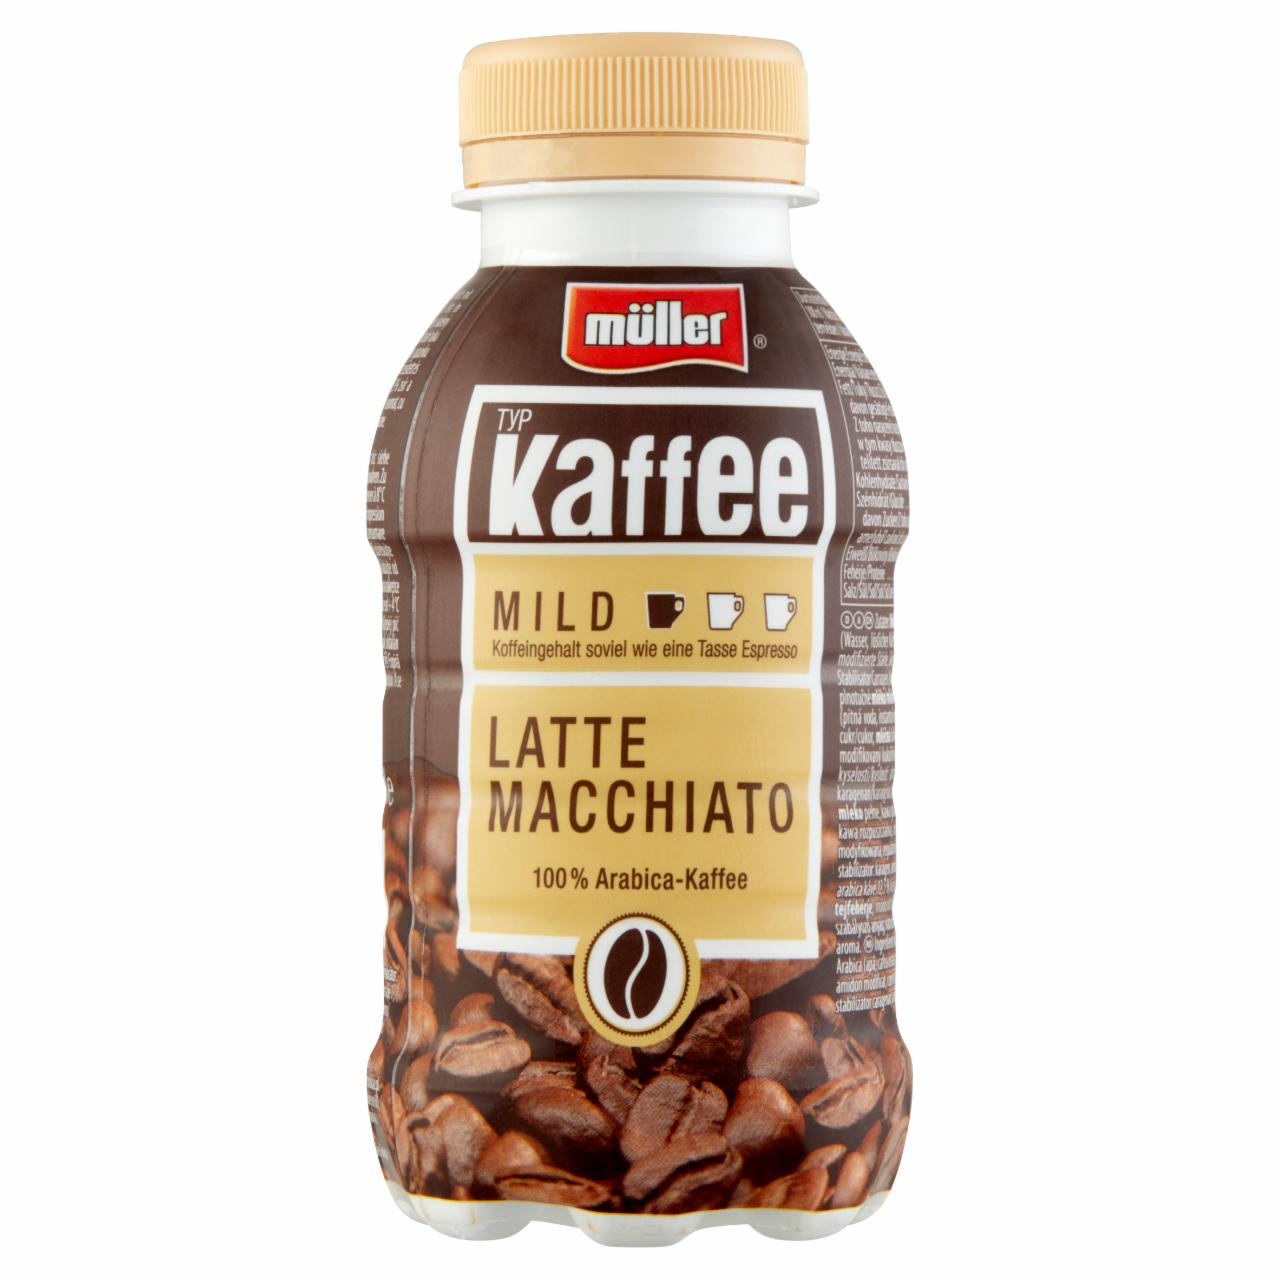 Képek - Müller Kaffee Latte Macchiato Arabica kávéval ízesített és édesített félzsíros tejital 250 ml